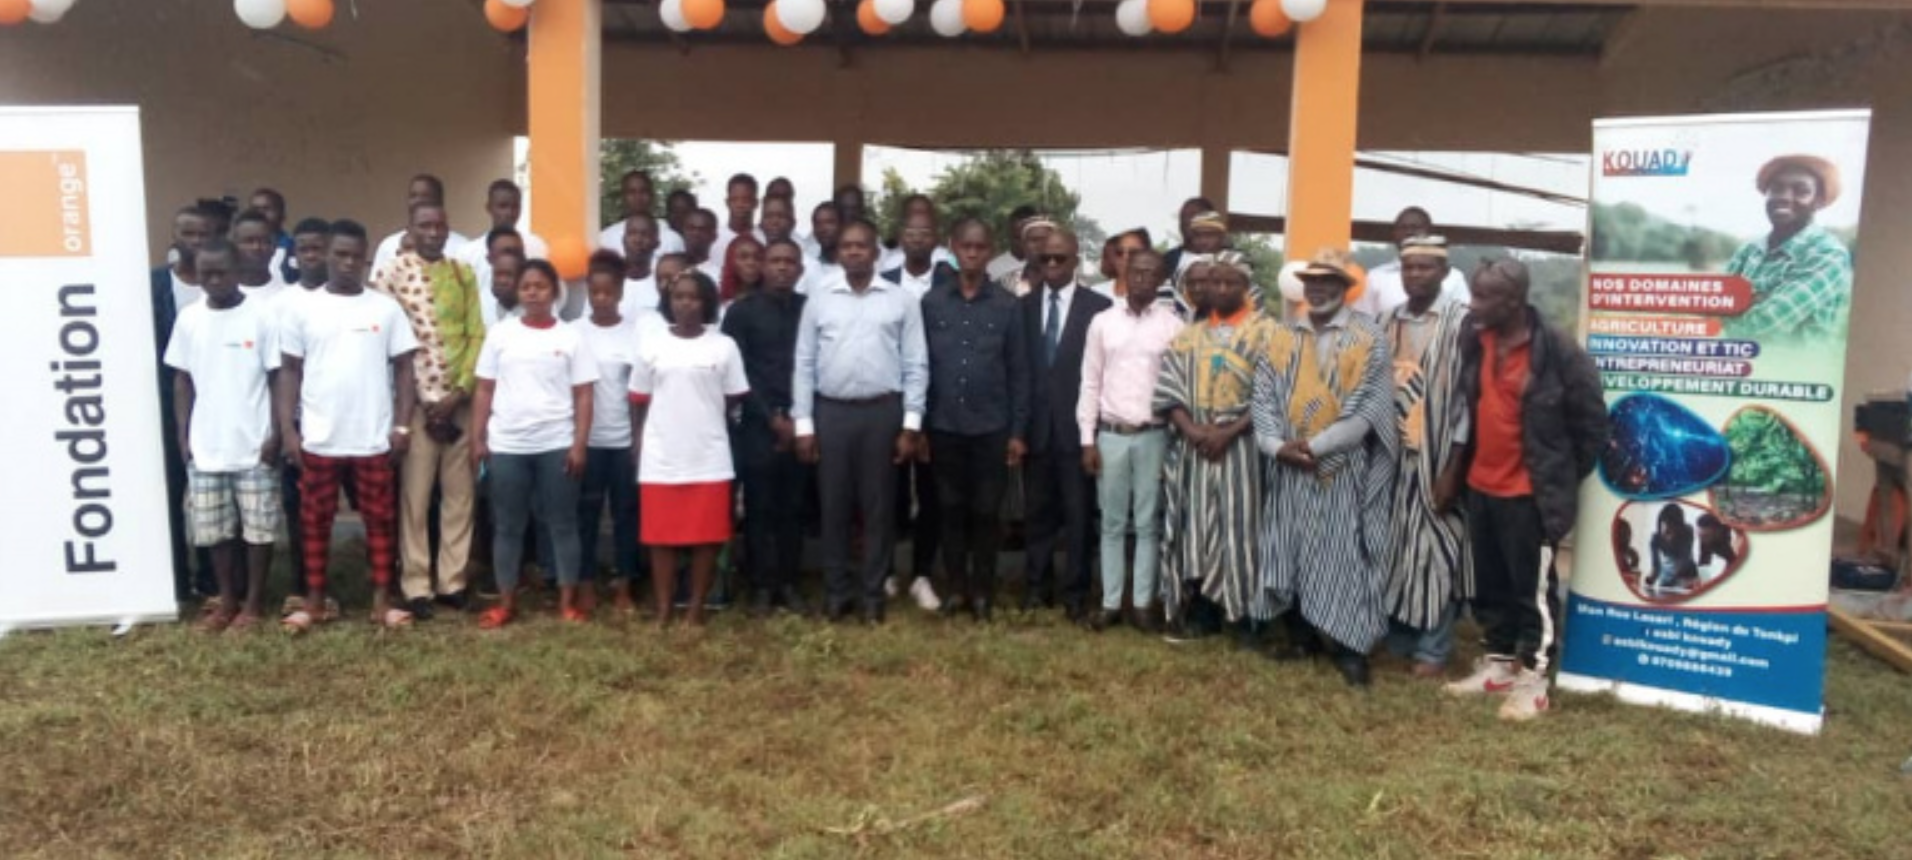 Côte d’Ivoire : l’ONG Kouady au secours de 60 jeunes de Danané et Man